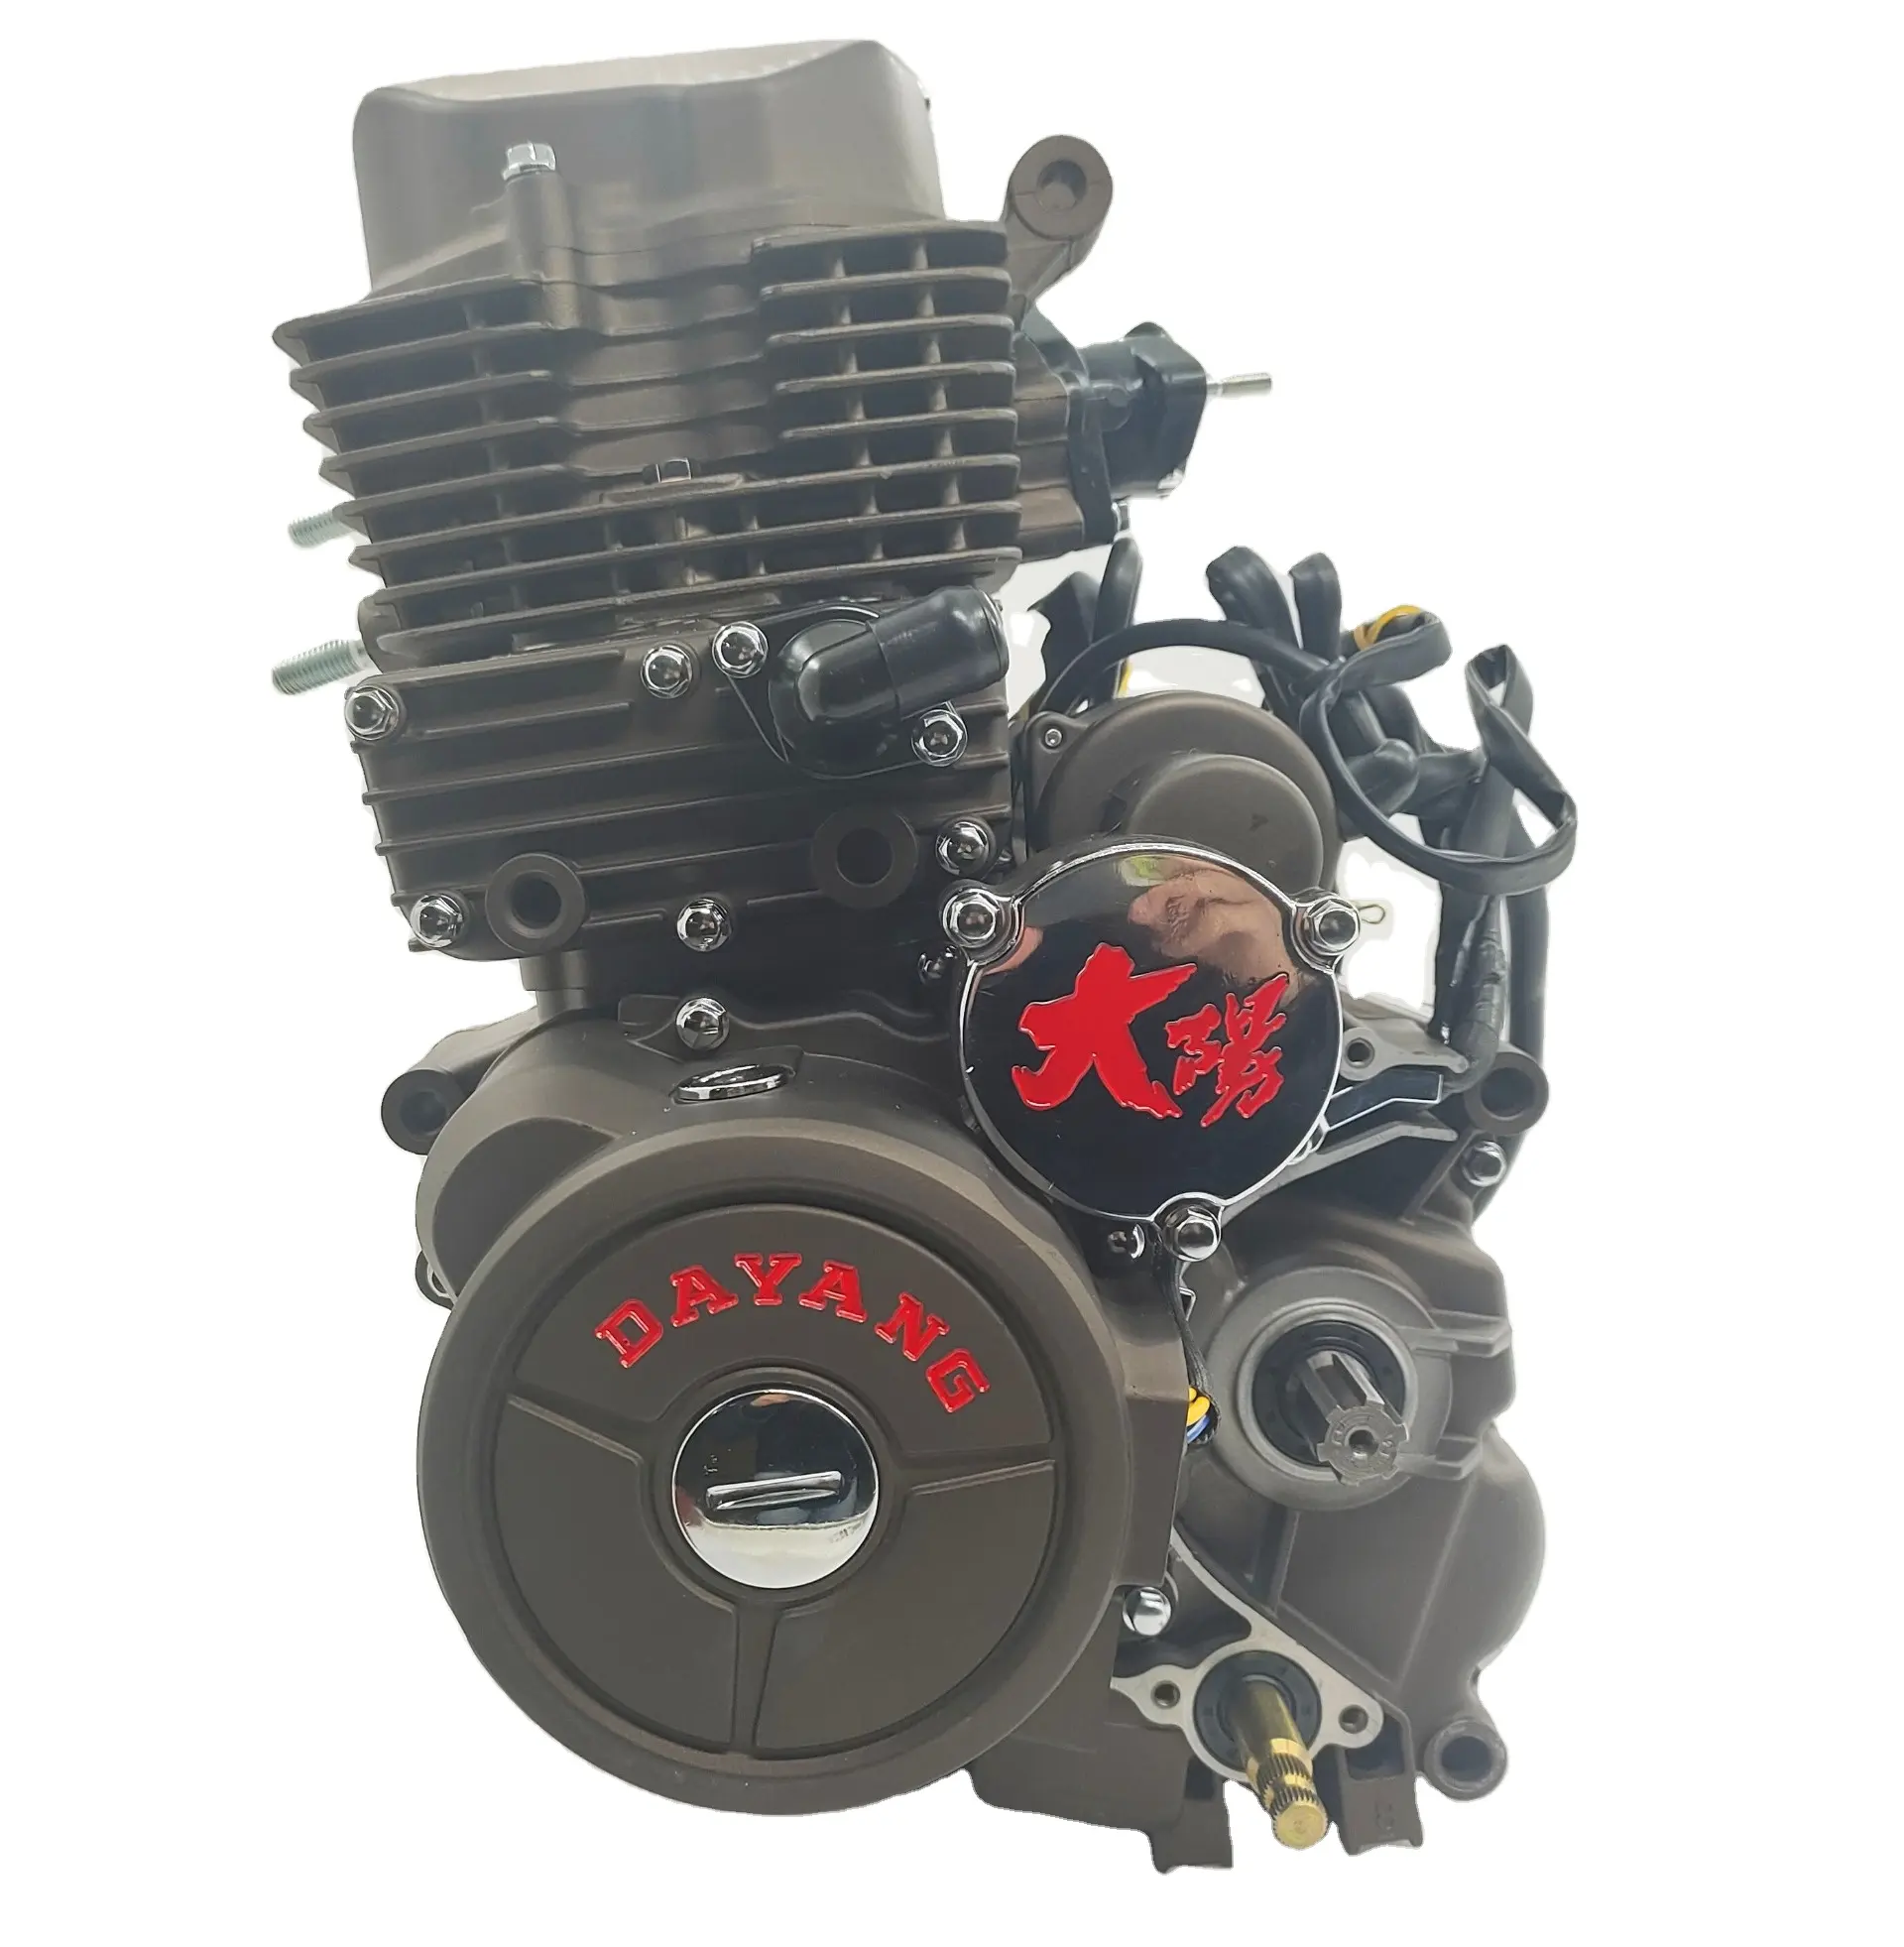 DAYANG 모터 공장 가솔린 세 바퀴 오토바이 부품 세발 자전거 엔진 CG175cc 물 펌프 엔진